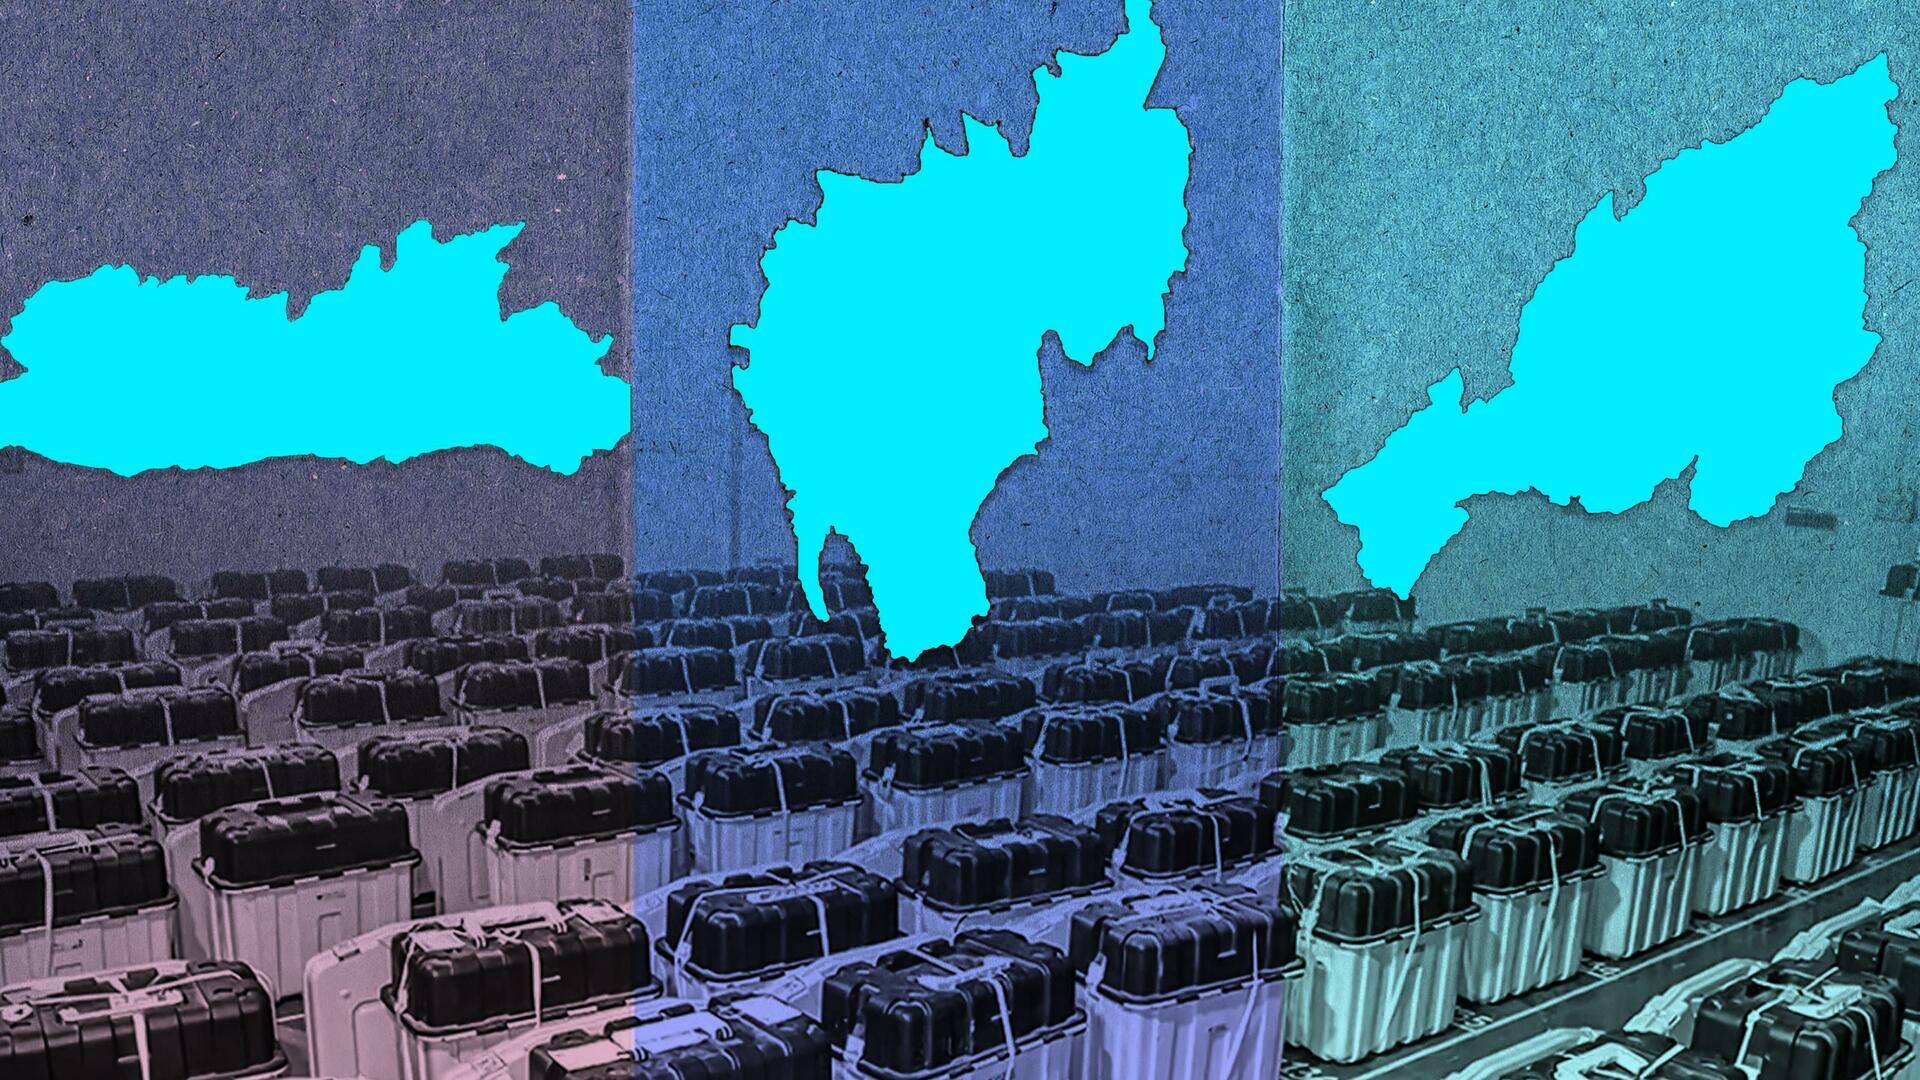 विधानसभा चुनाव: त्रिपुरा, मेघालय और नागालैंड में मतगणना जारी; भाजपा 2 राज्यों में जीत की ओर